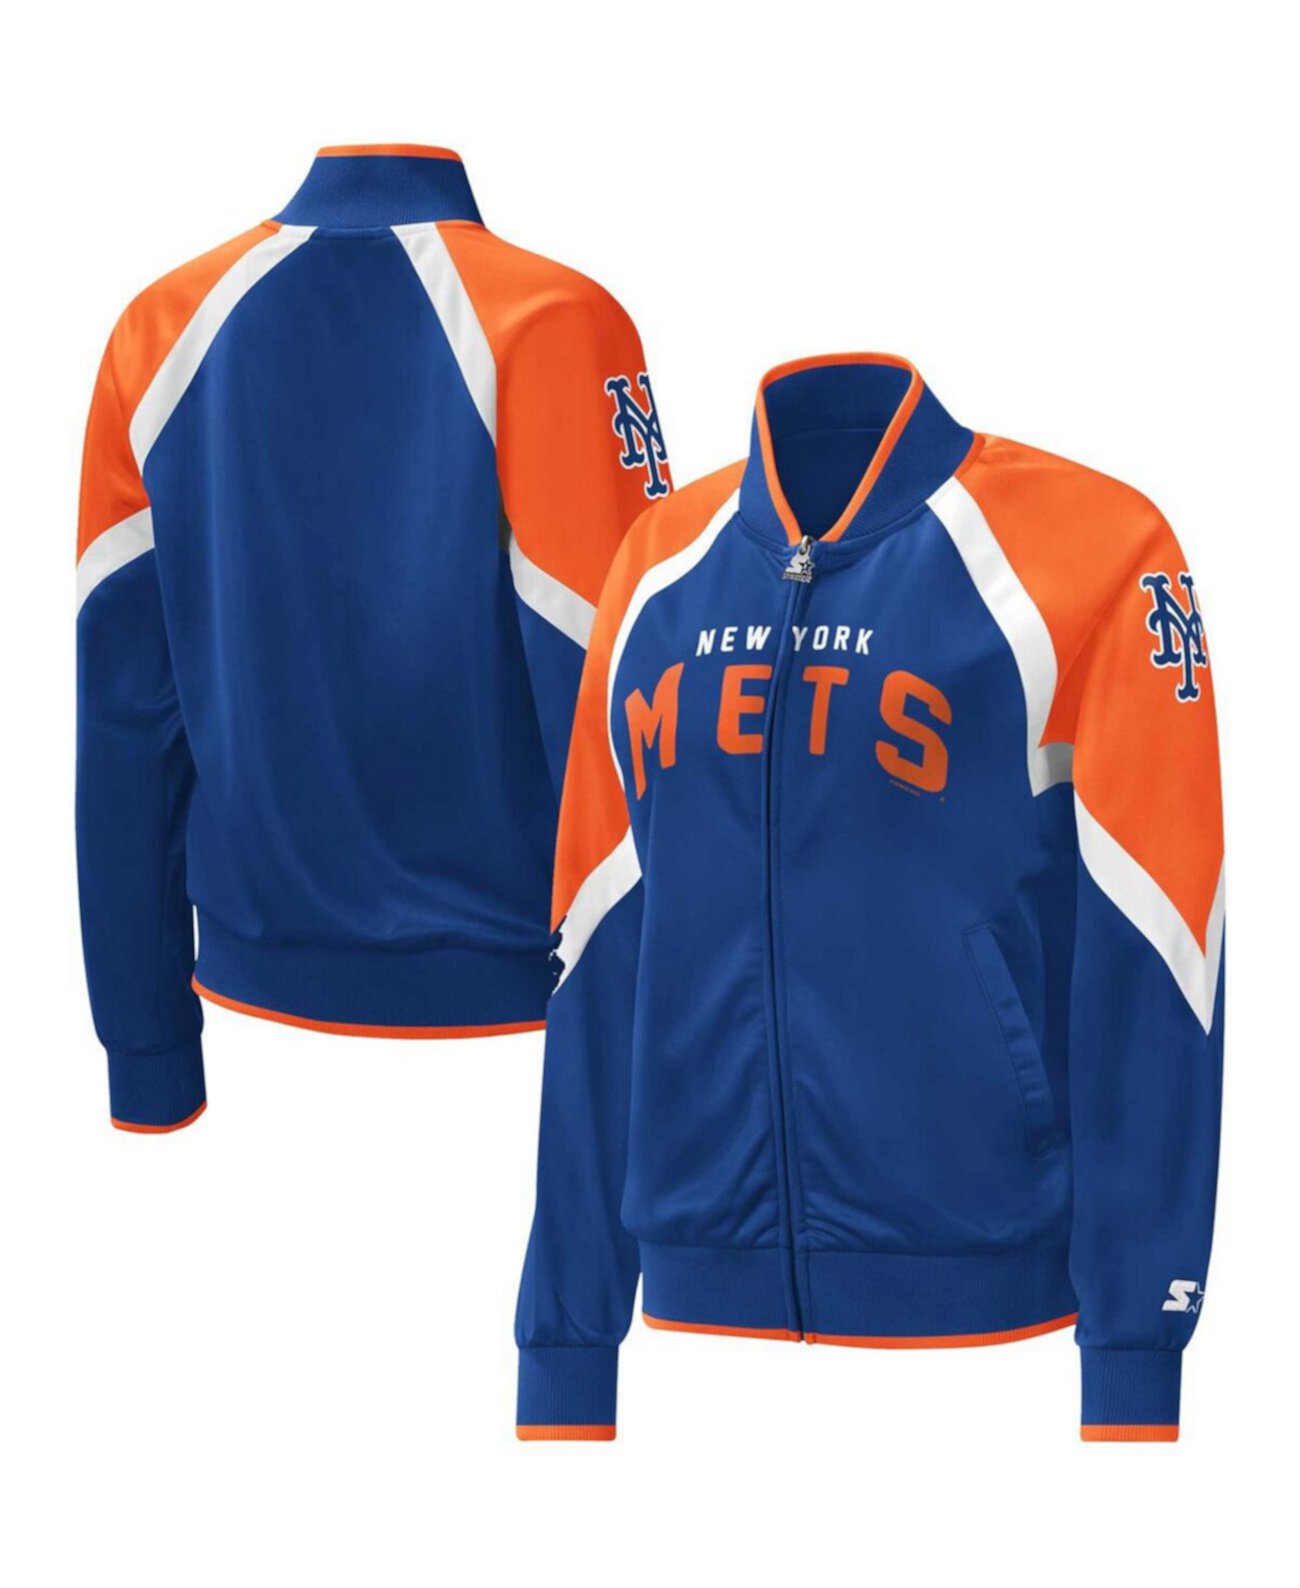 Женская спортивная куртка Royal New York Mets Touchdown с регланами и молнией во всю длину Starter